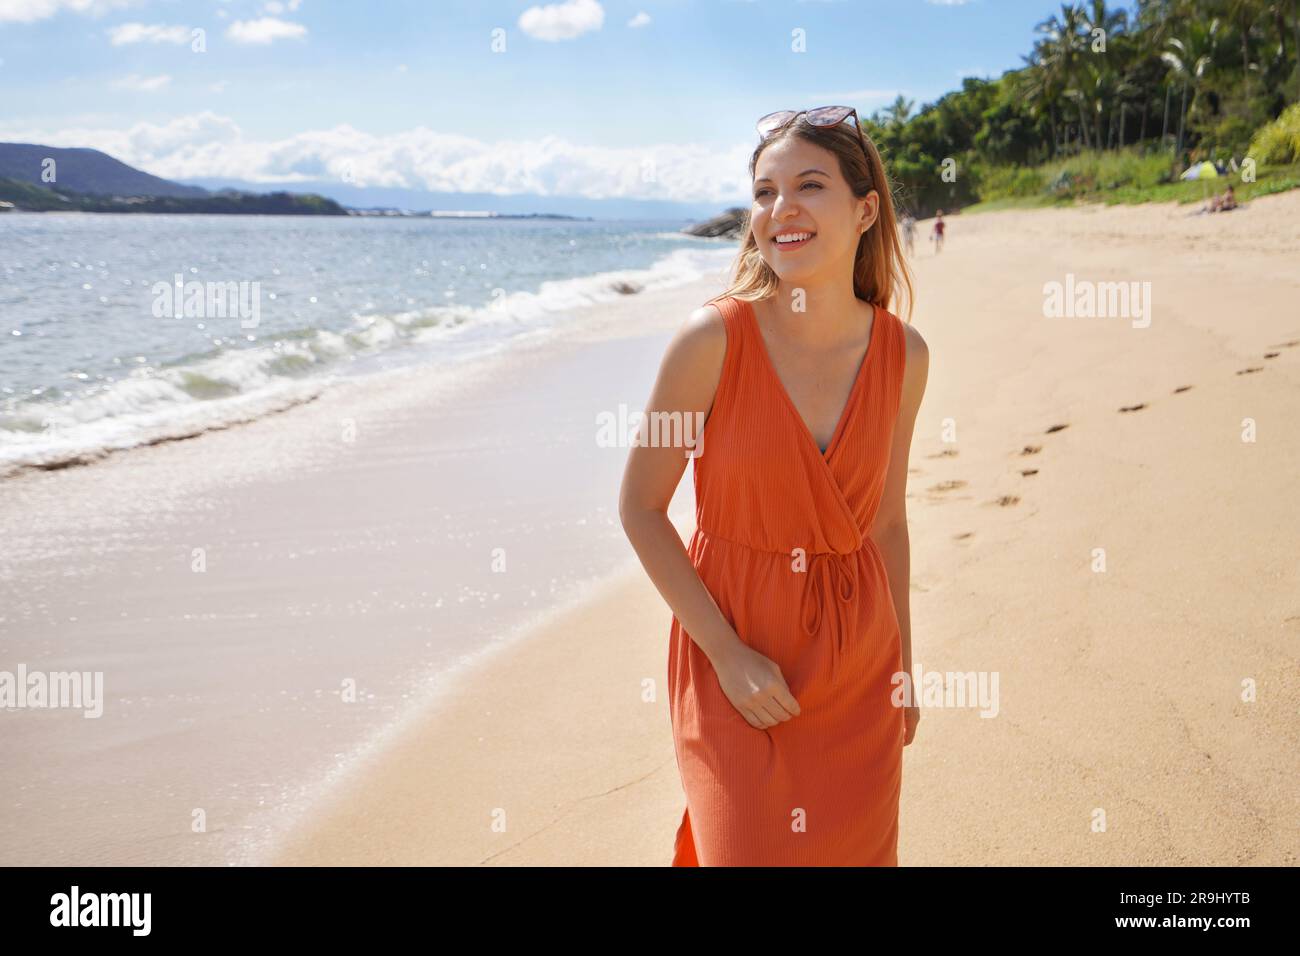 Bellissima giovane donna con un abito da sole arancione e occhiali da sole in testa nella destinazione estiva dell'isola di Ilhabela, Brasile Foto Stock